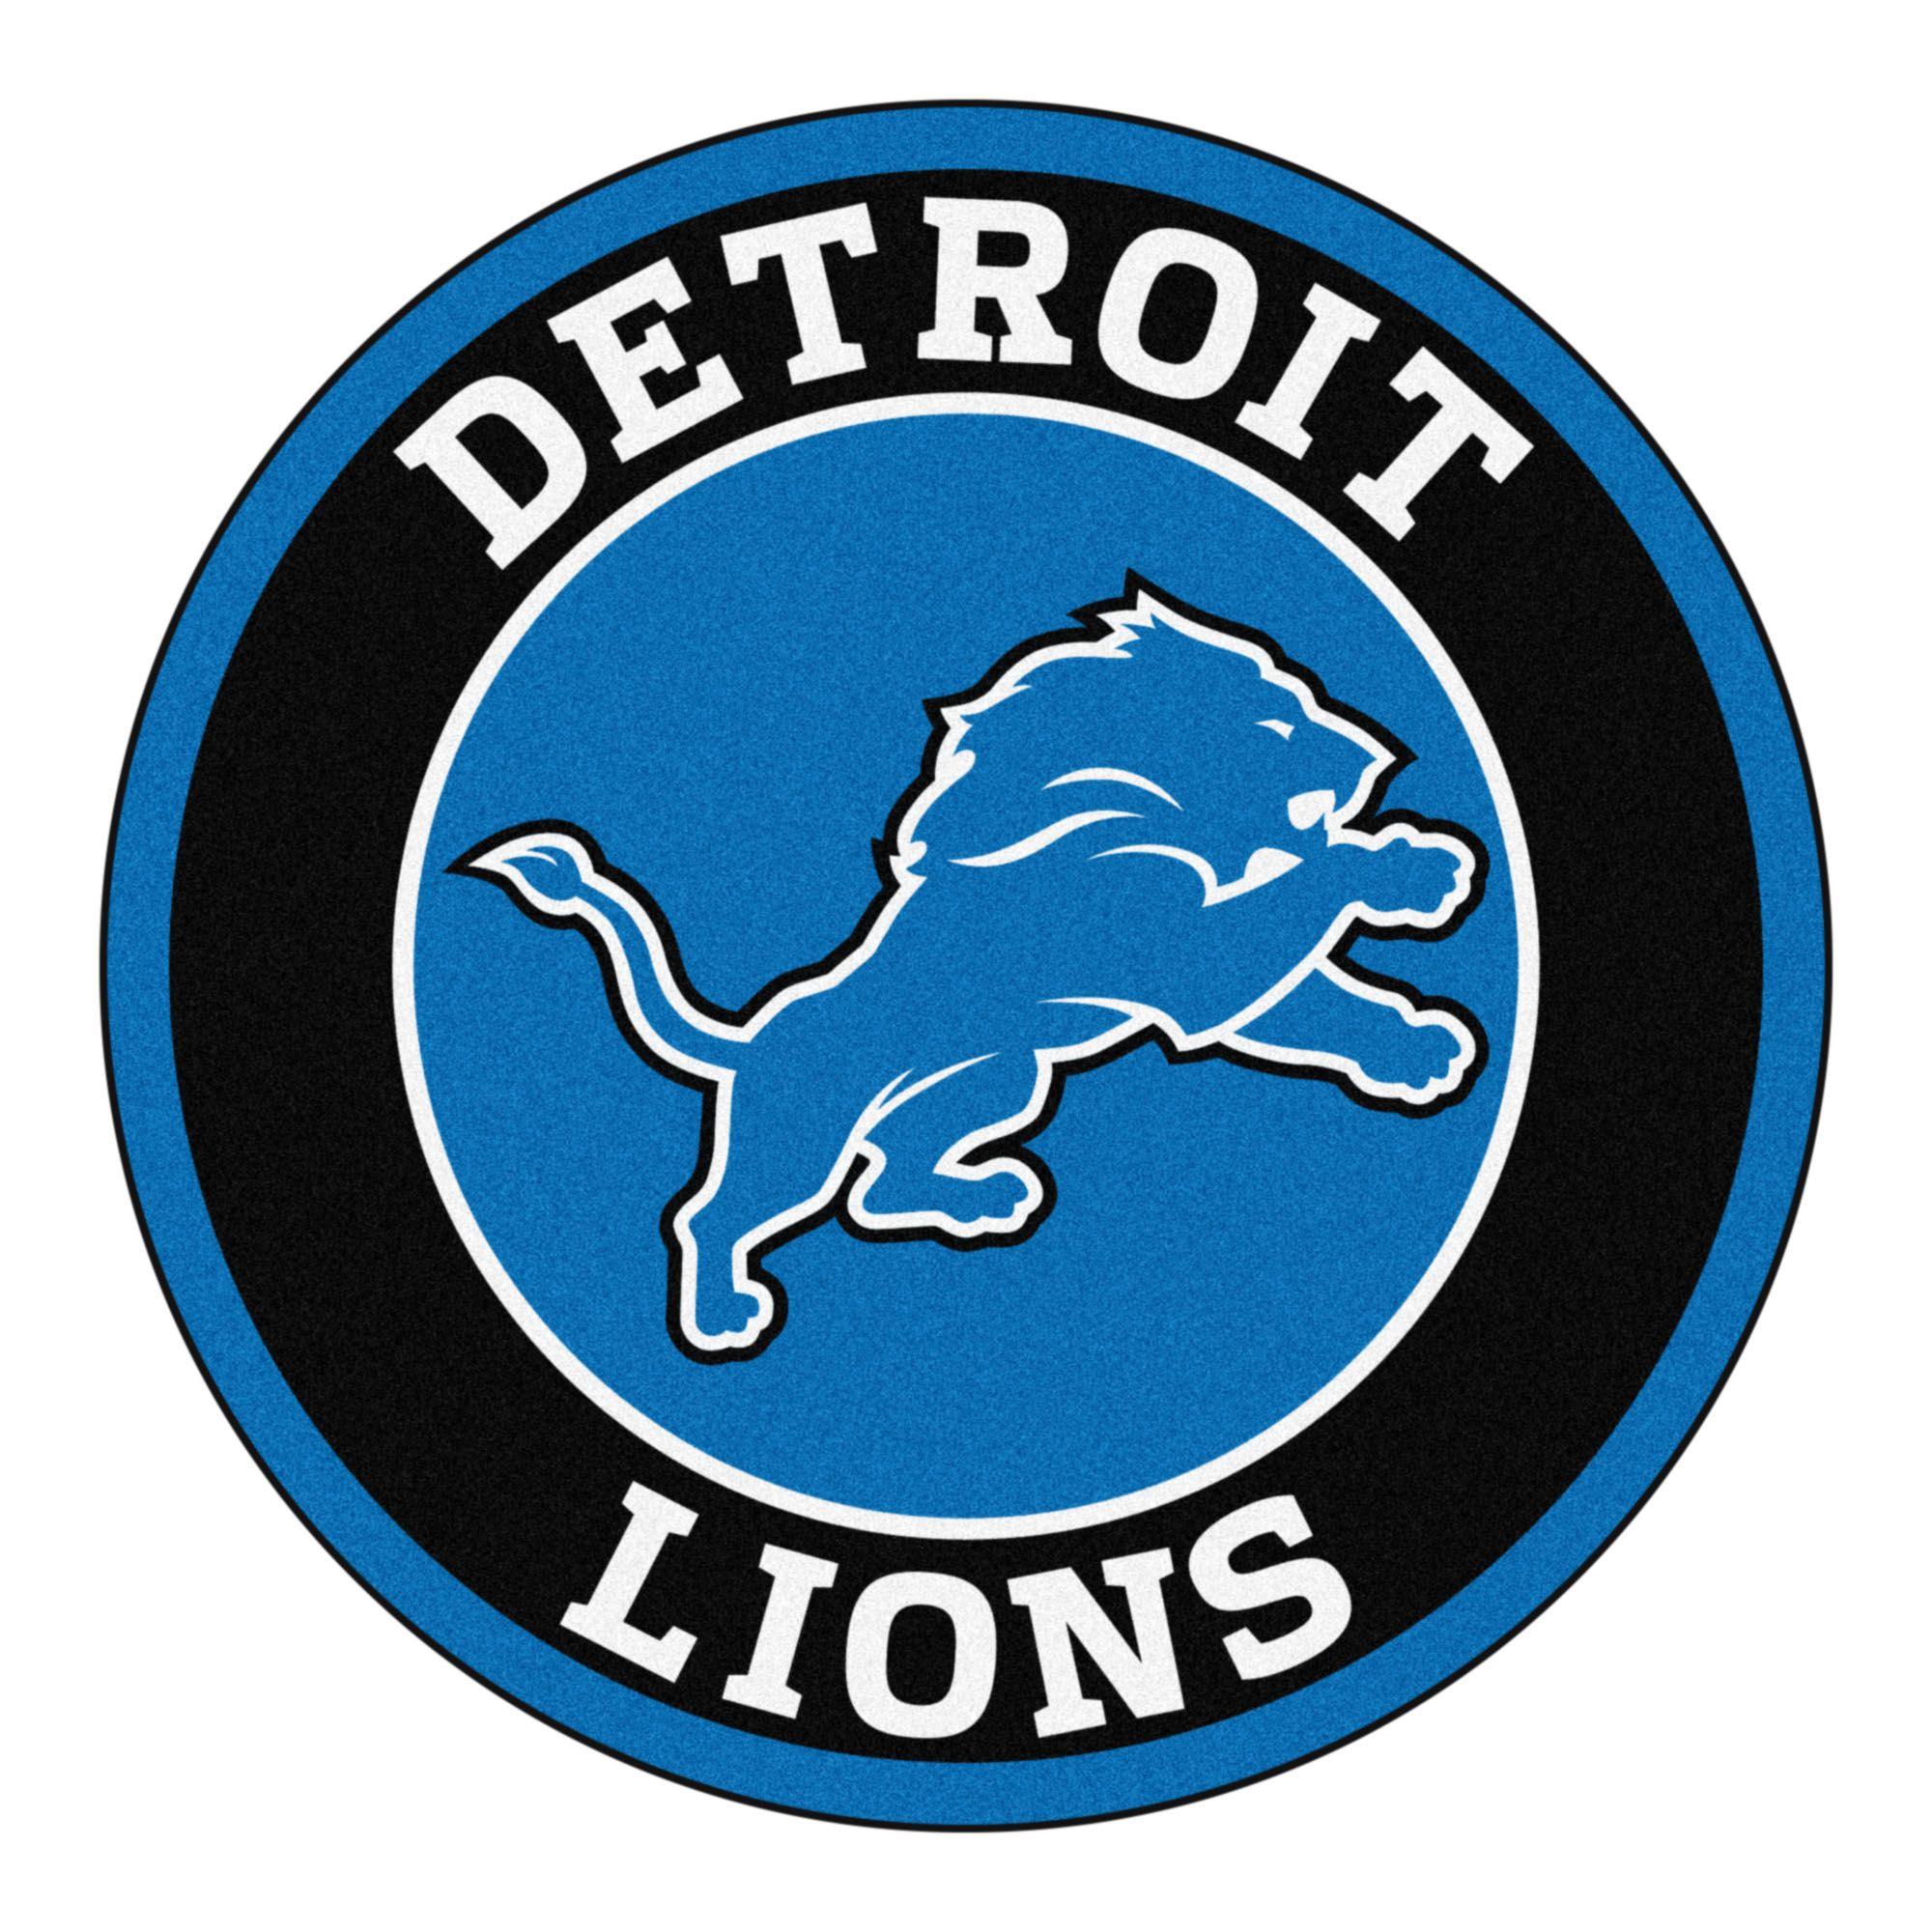 NFL Lions Logo - Detroit lions picture Logos